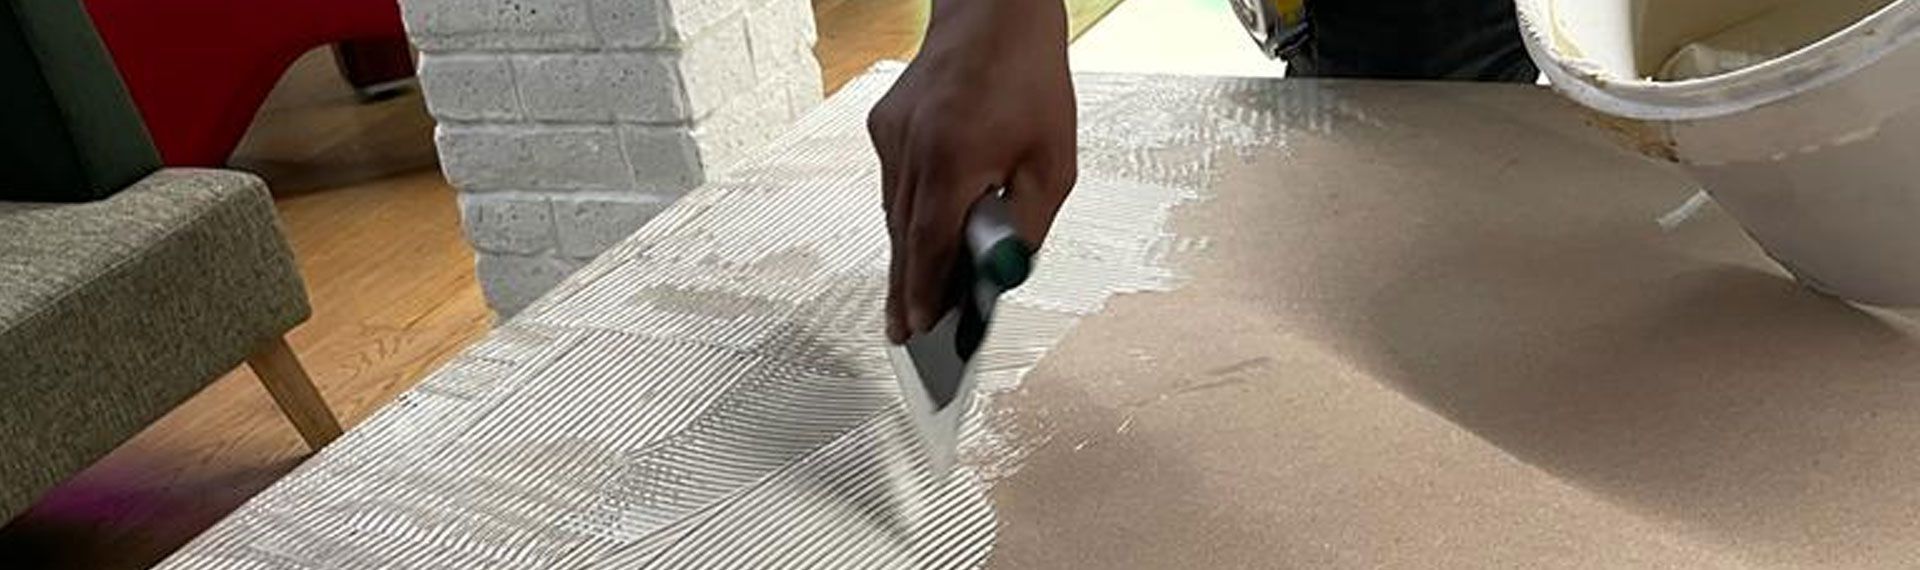 Aplicación de pegamento para piso vinílico